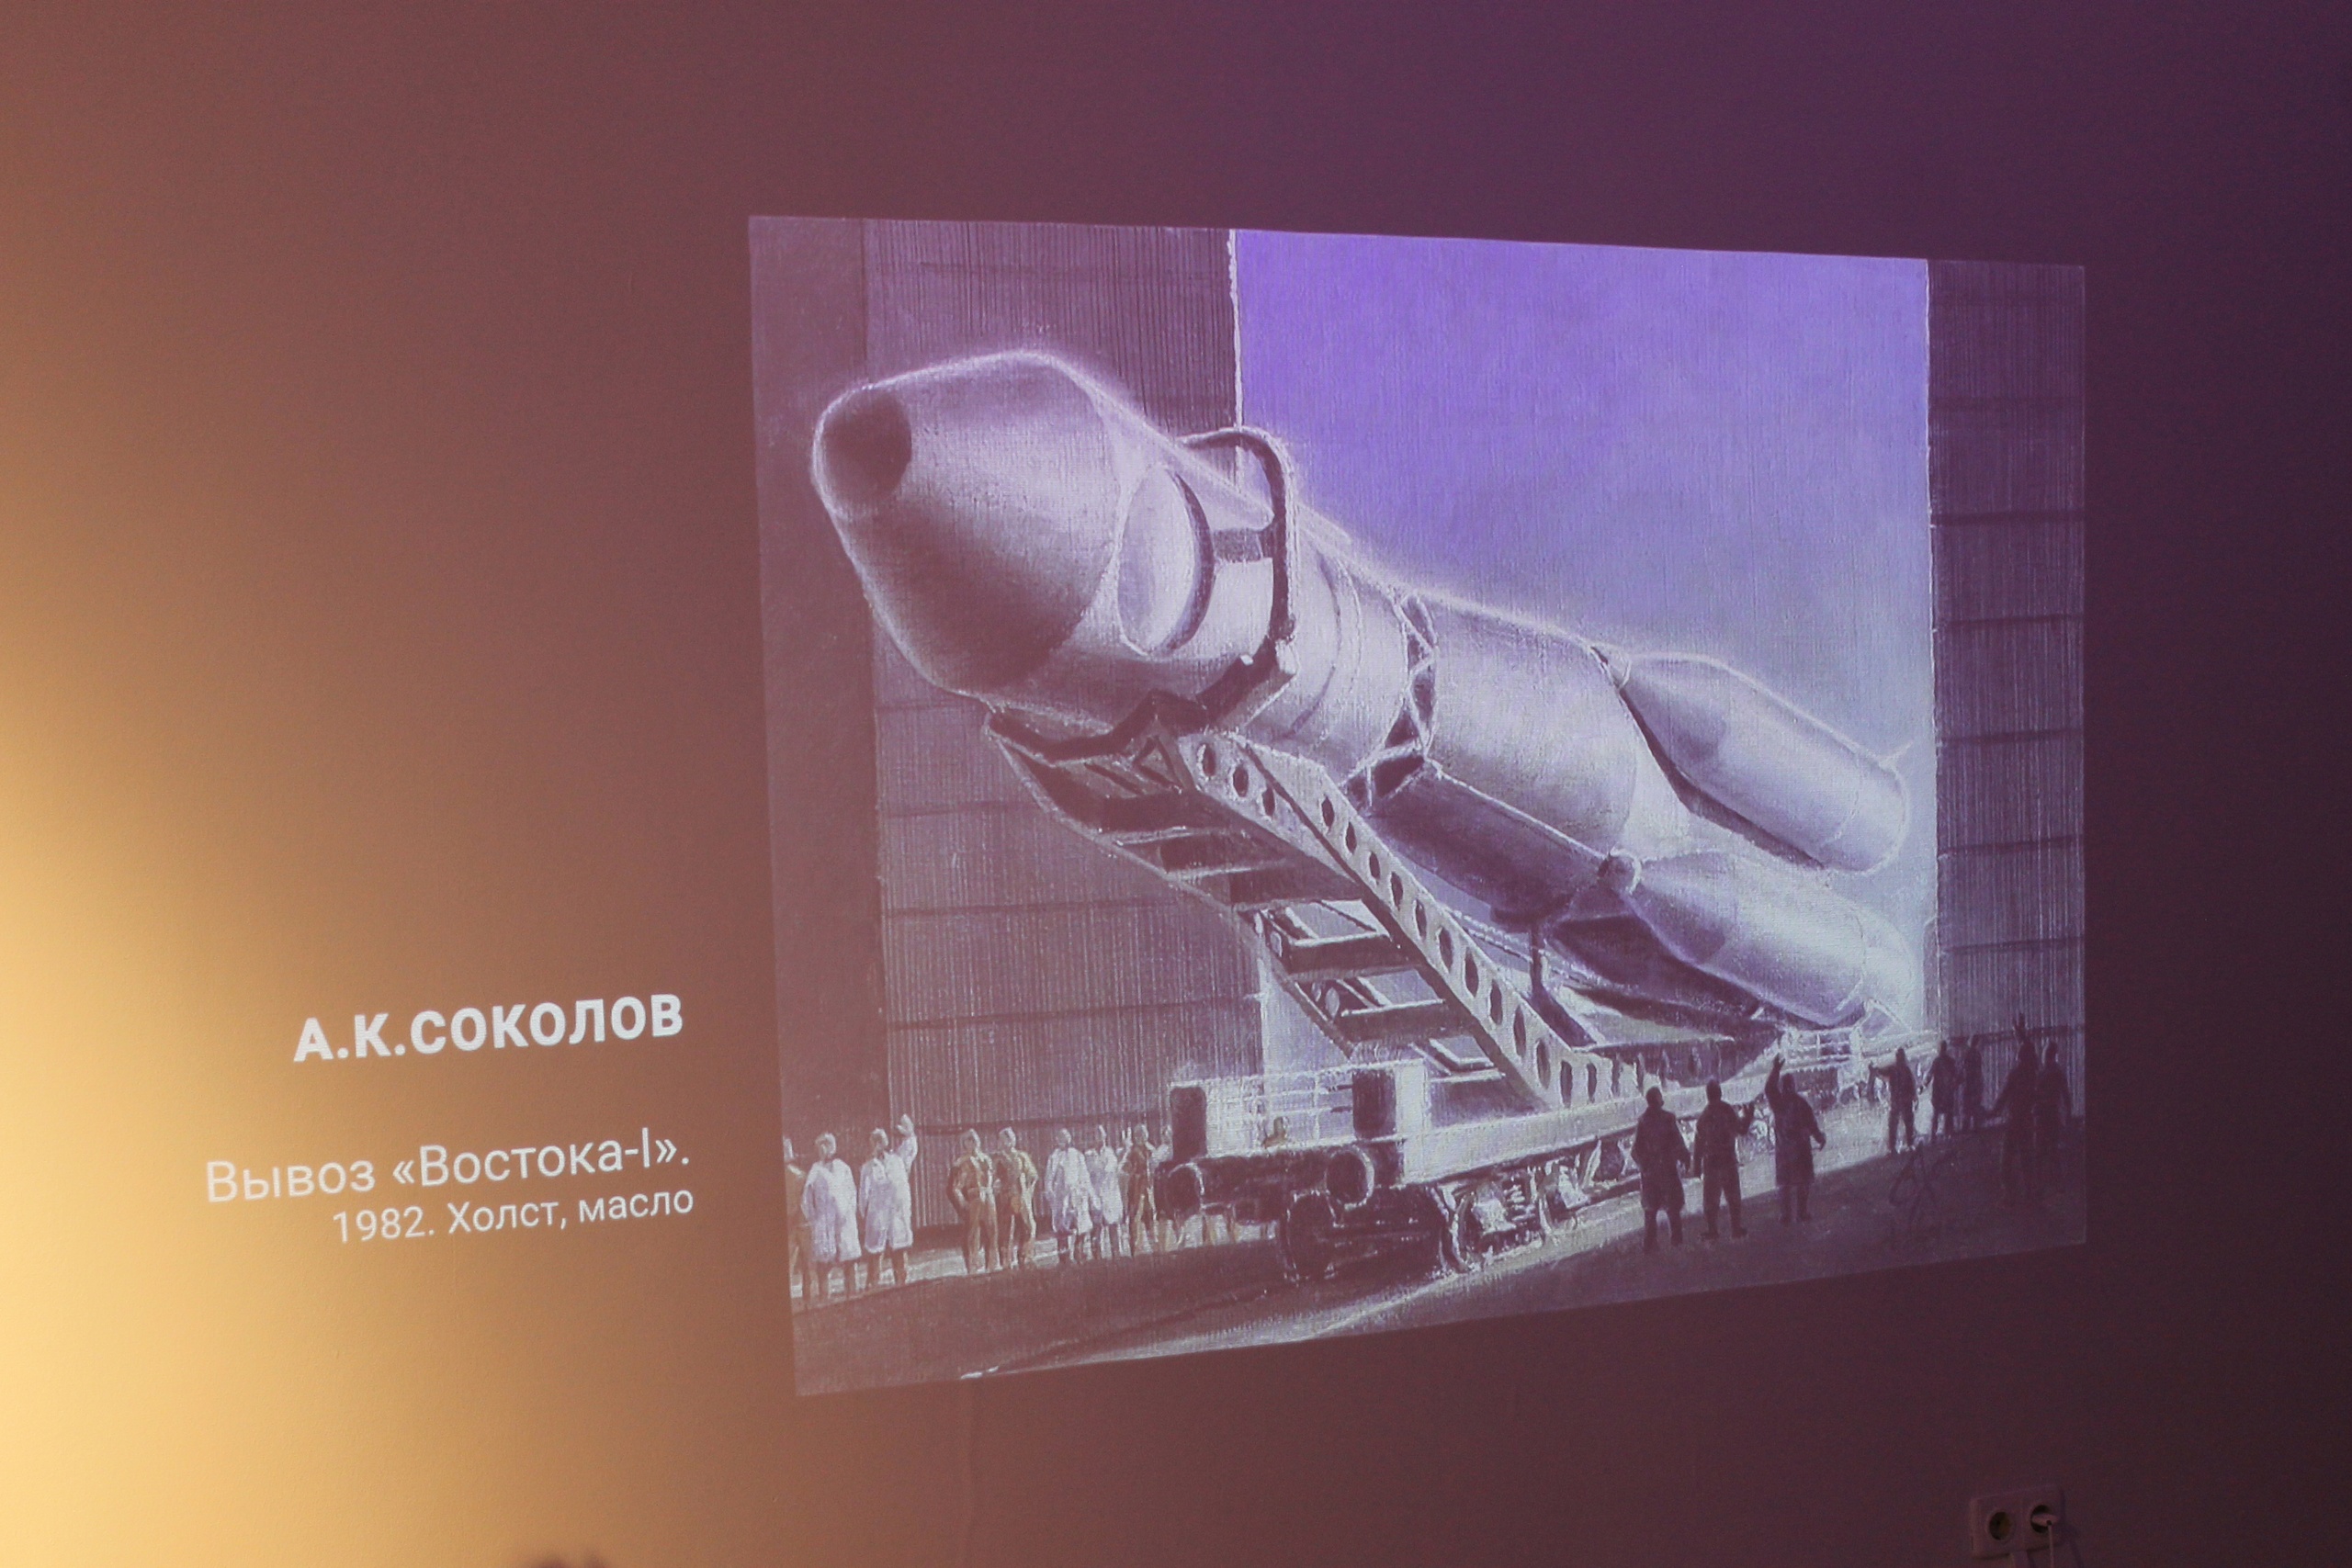 Около сотни кемеровчан посетили мультимедийную выставку Русского музея «Посвящение космонавтике» в первые дни после открытия